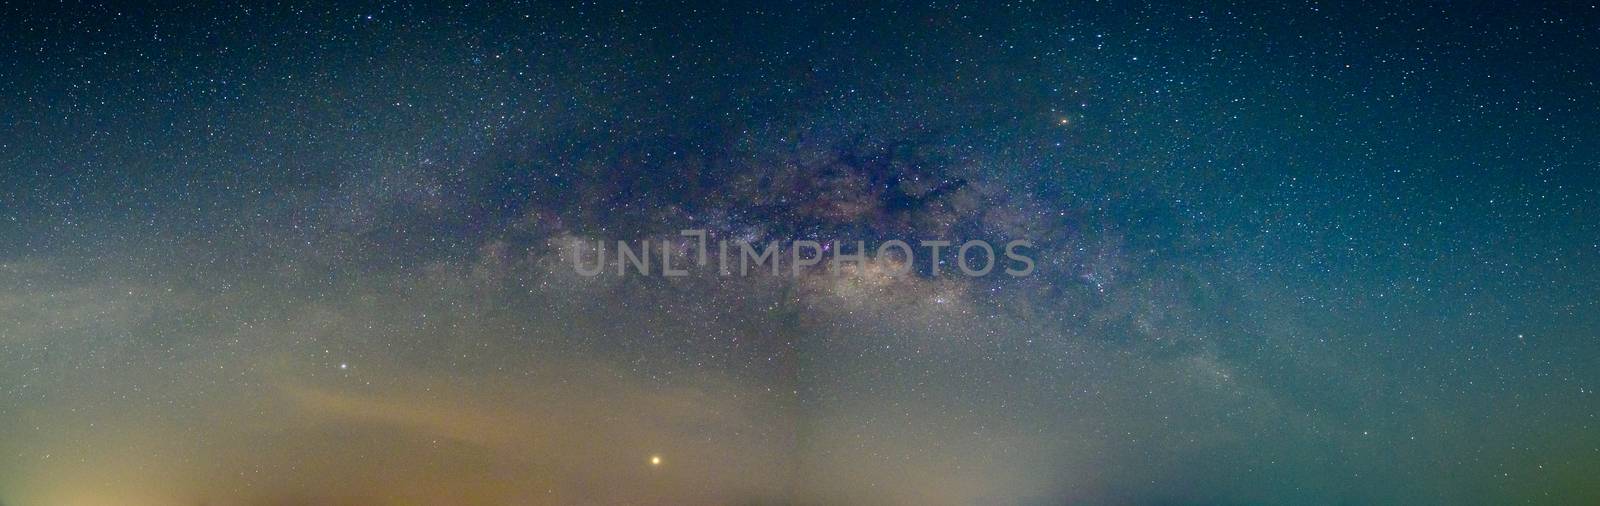 Panorama sky stars night milky way by Aukid